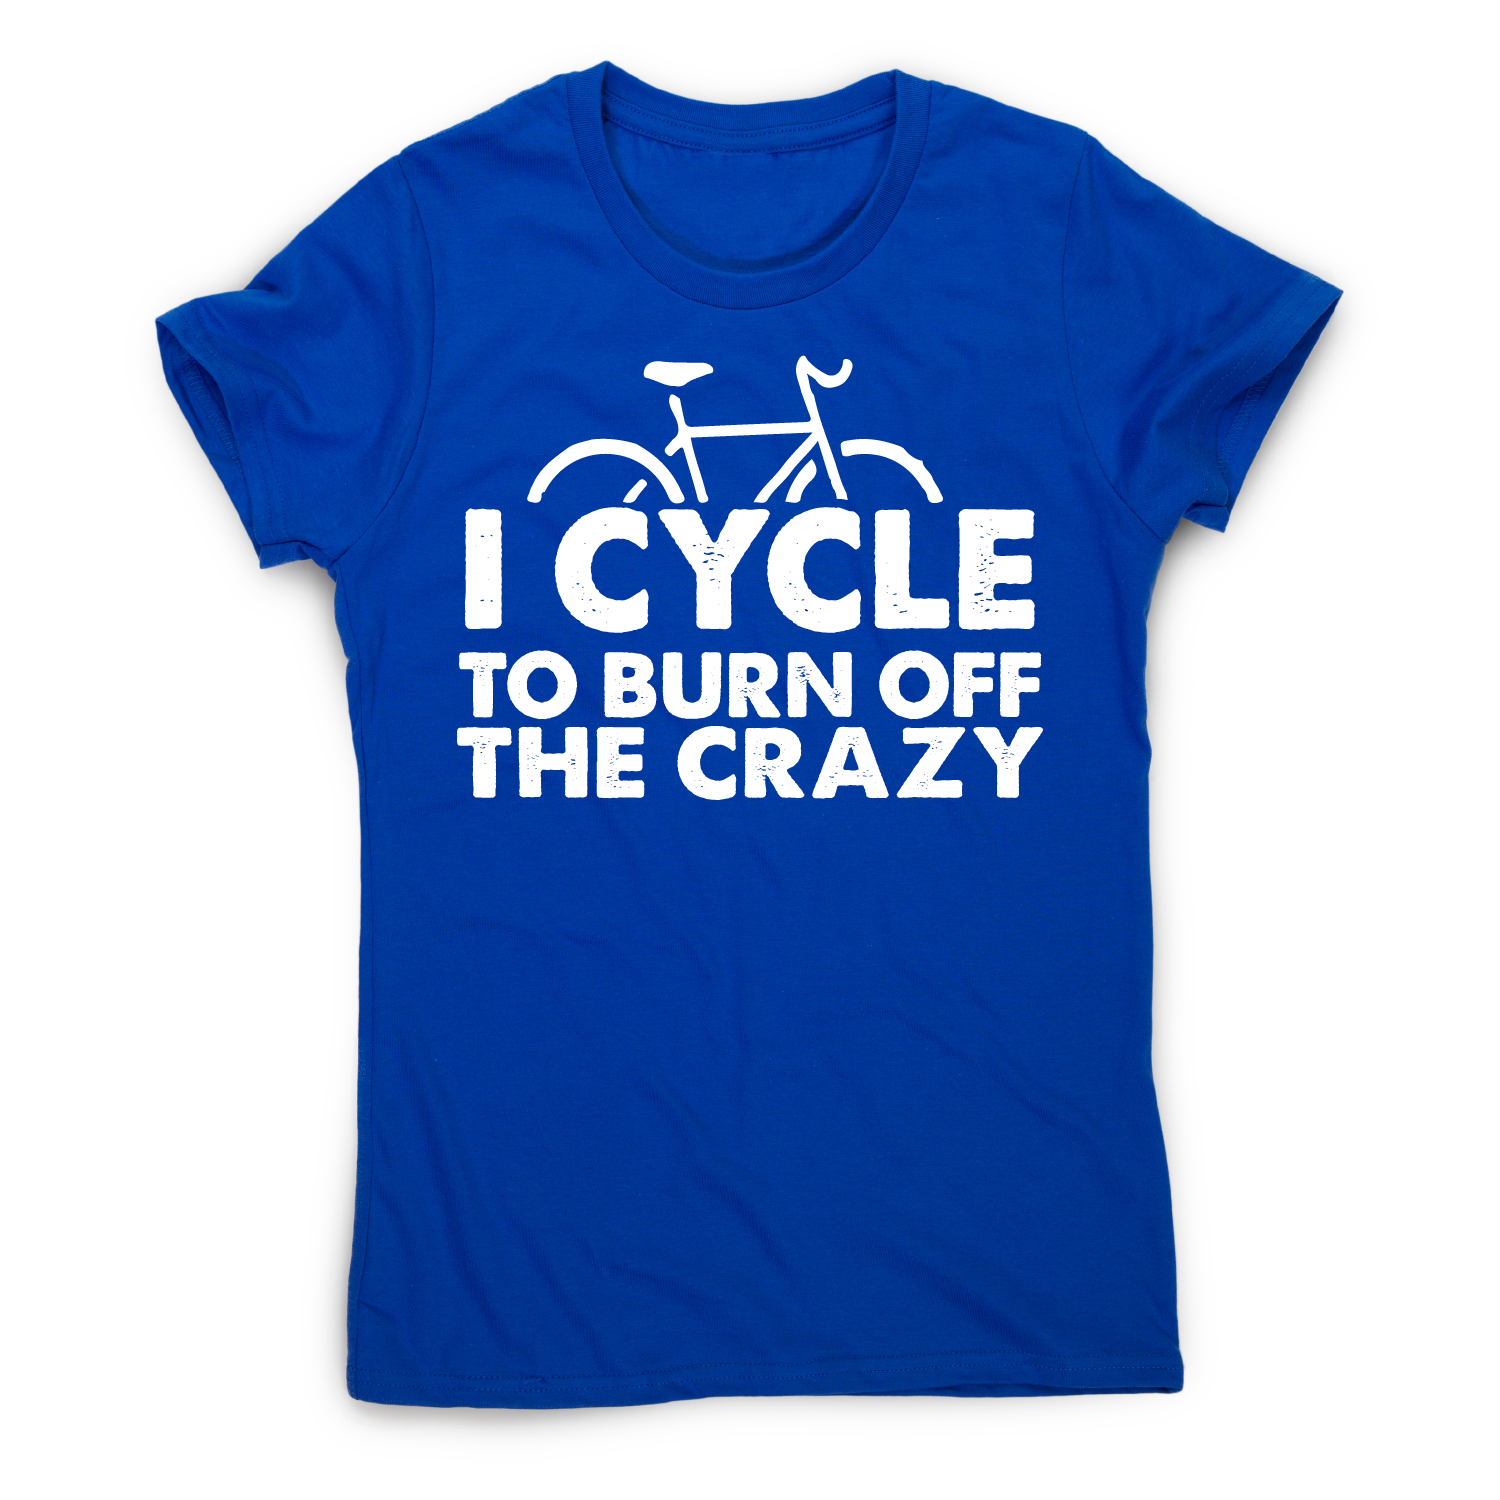 Cycle to burn off funny cycling biking t-shirt women’s – Blue _ 2XL